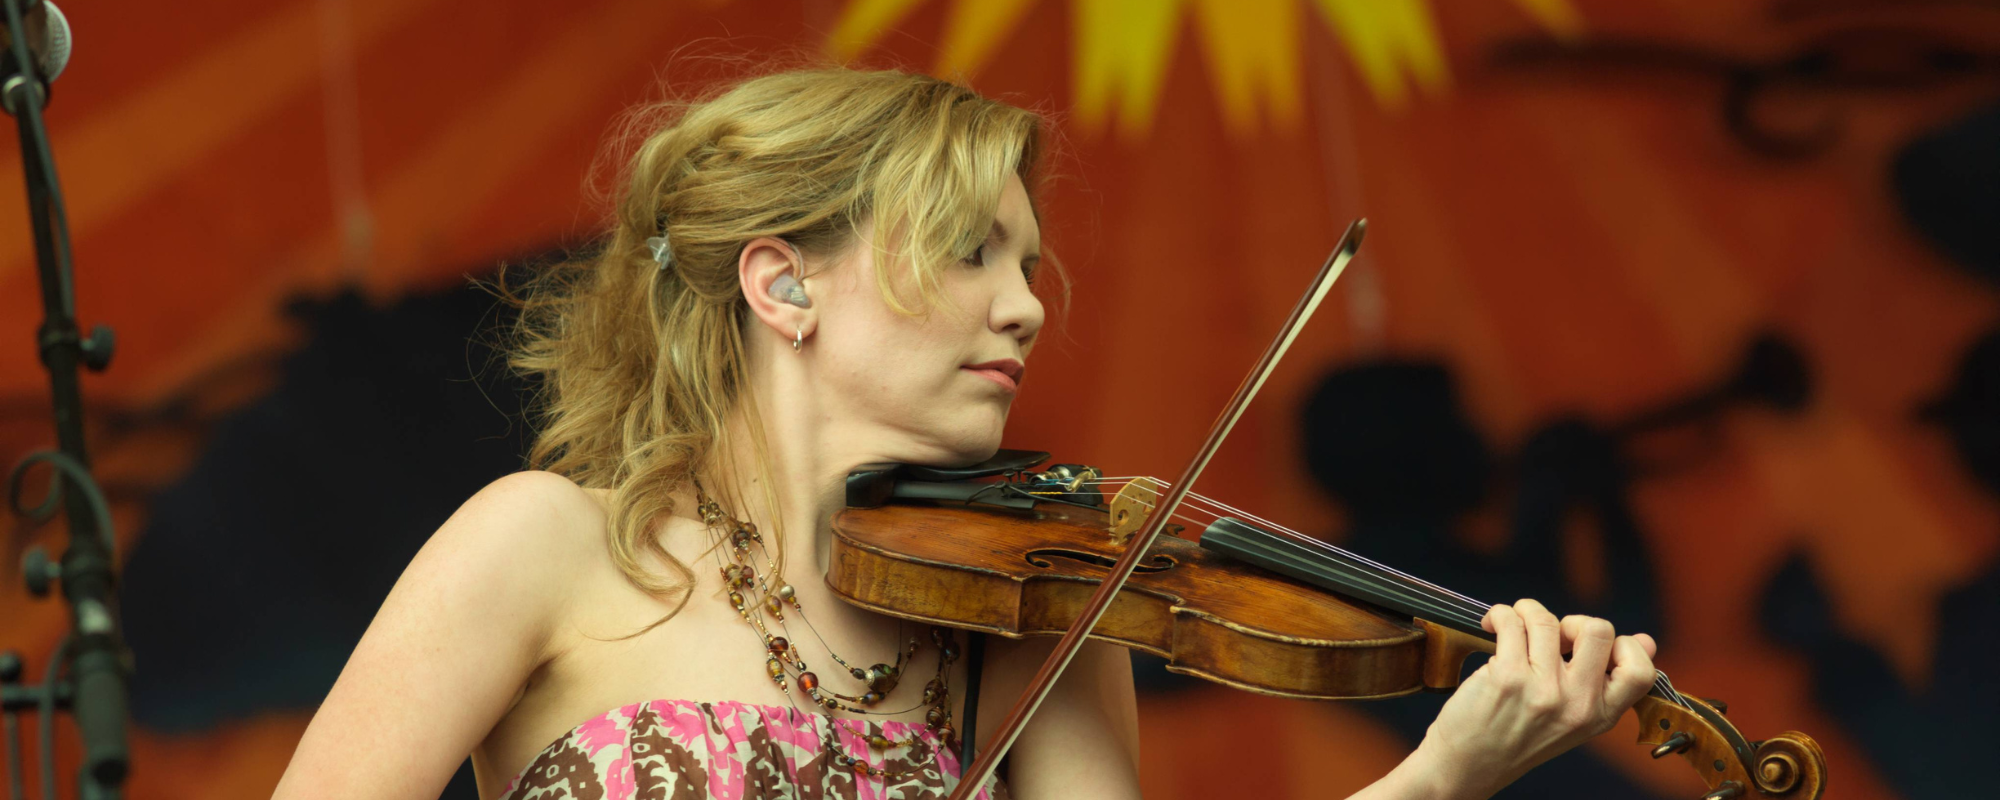 5 Tips for Budding Violin Players